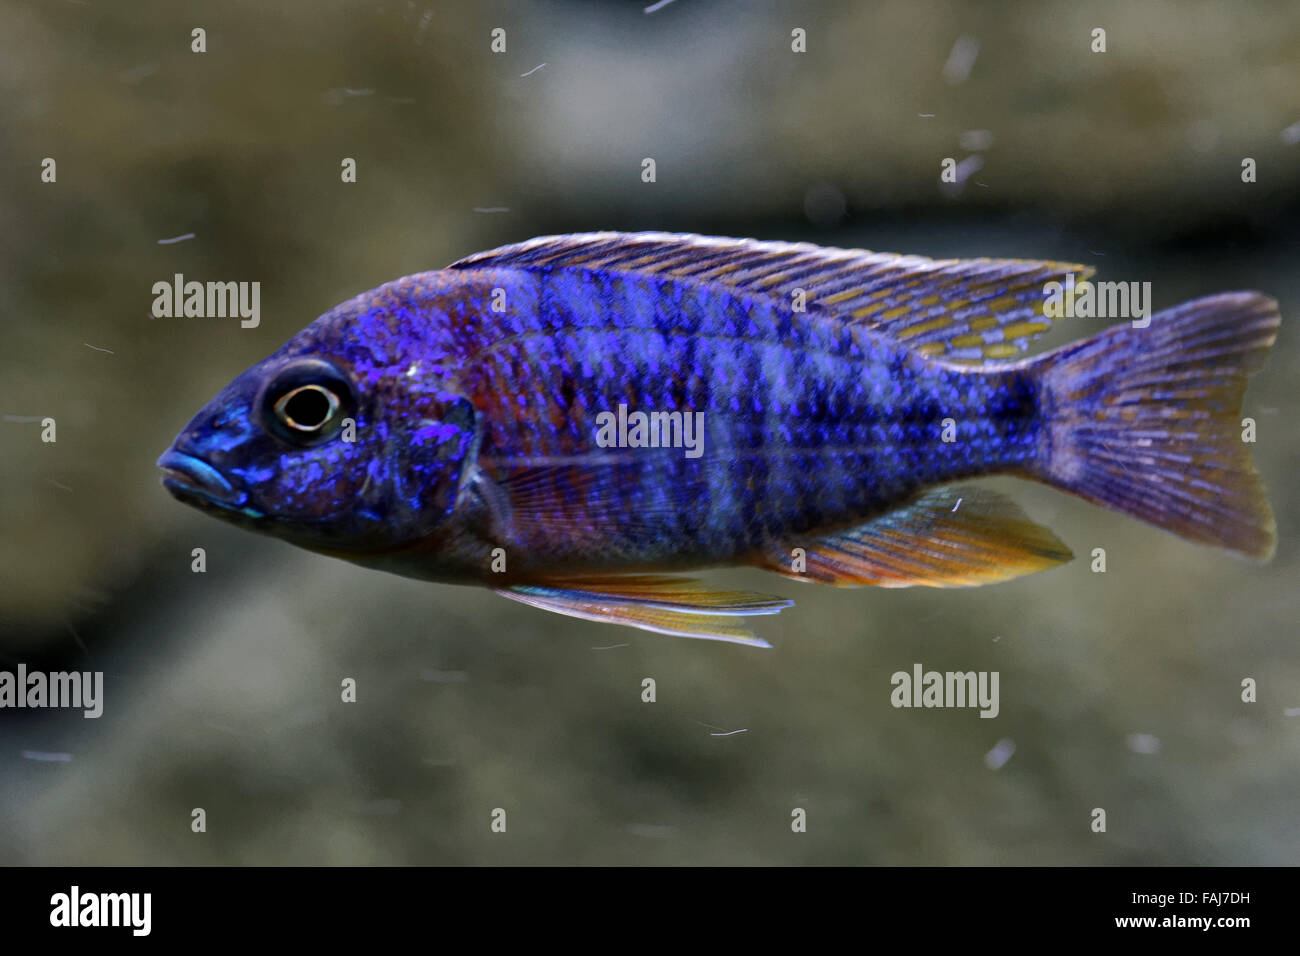 Cíclidos son peces de la familia Cichlidae en el orden de los Perciformes. Foto de stock